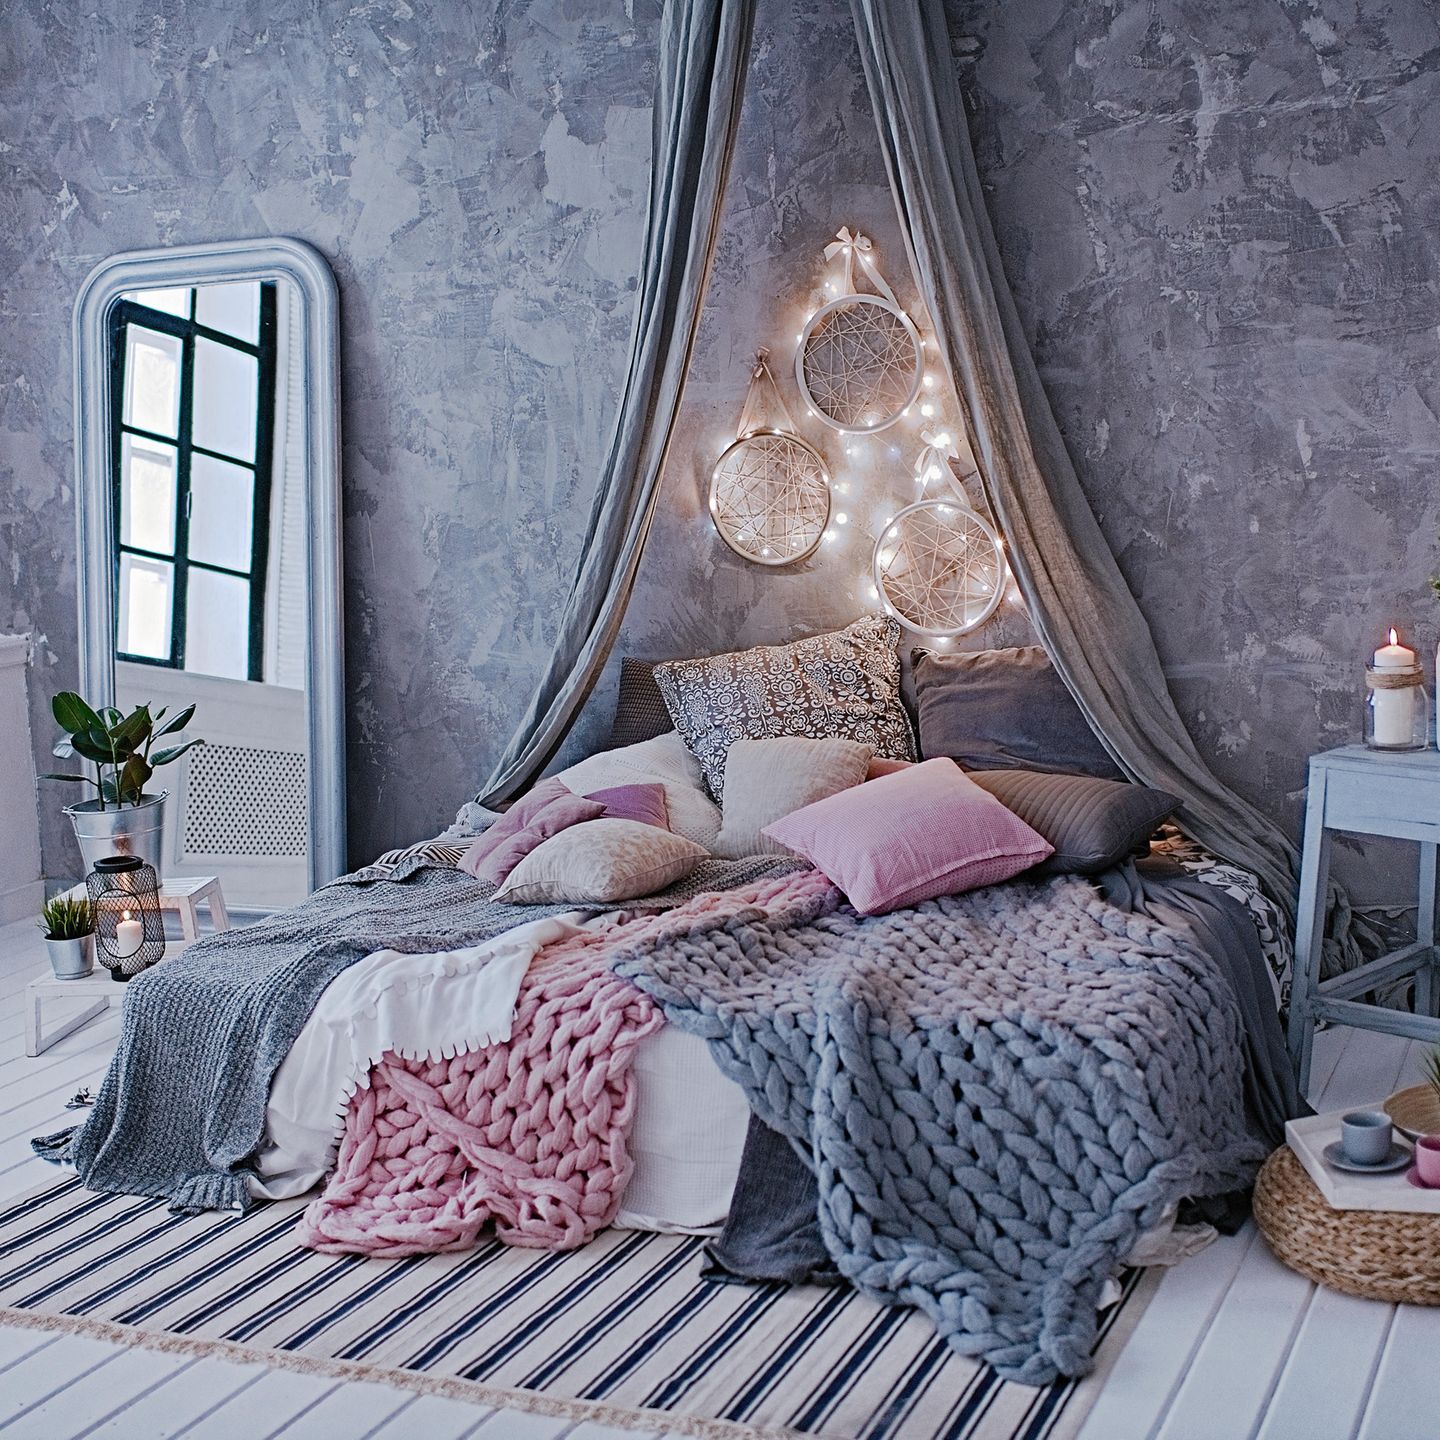 Schlafzimmer gemütlicher machen: 11 Tricks  BRIGITTE.de